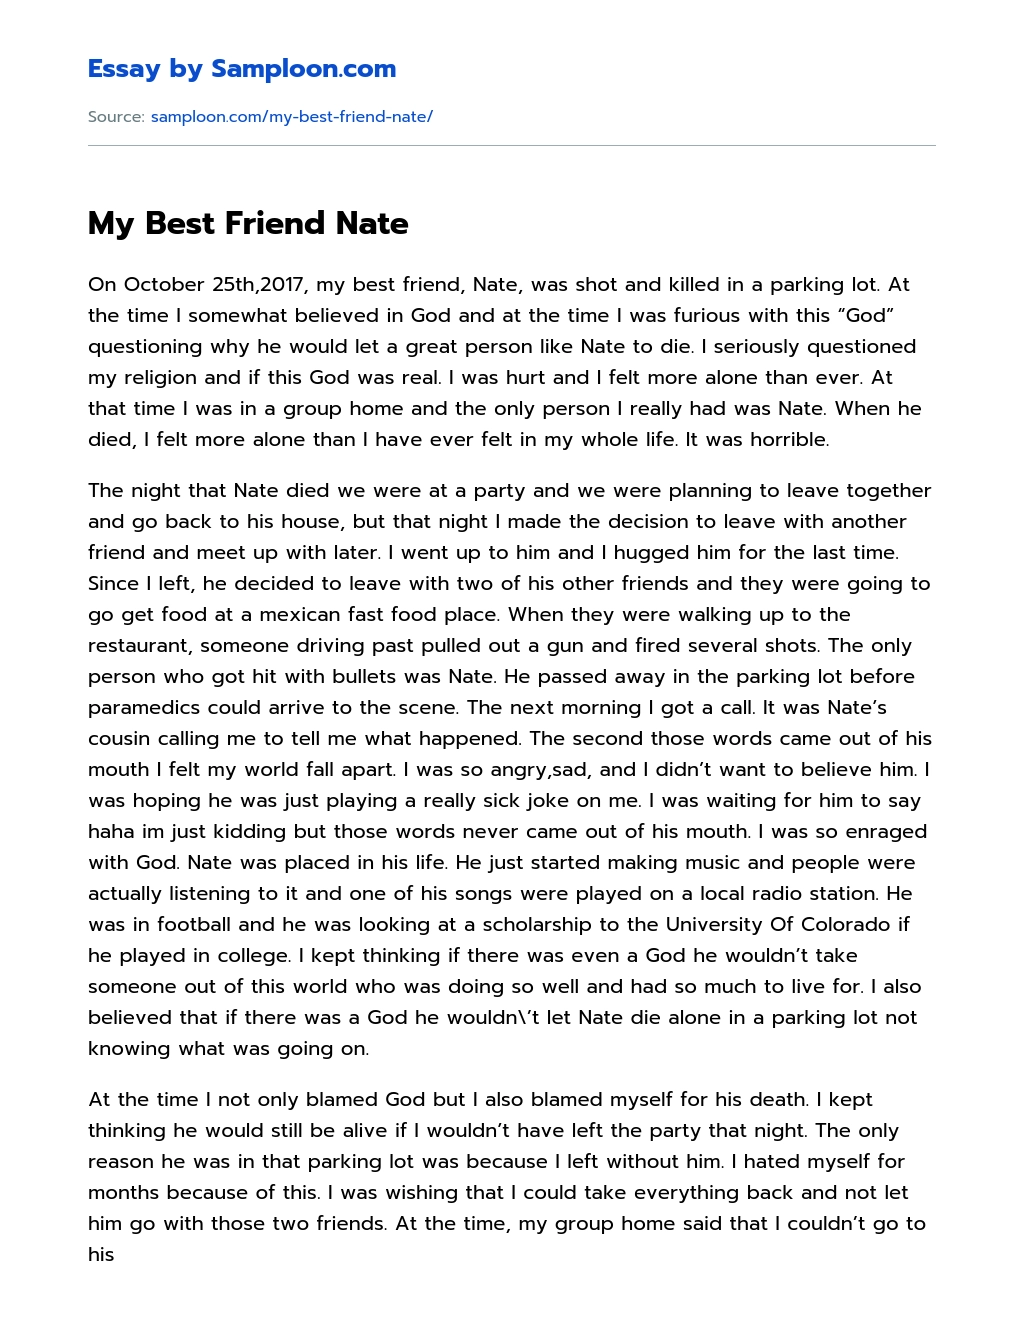 My Best Friend Nate essay